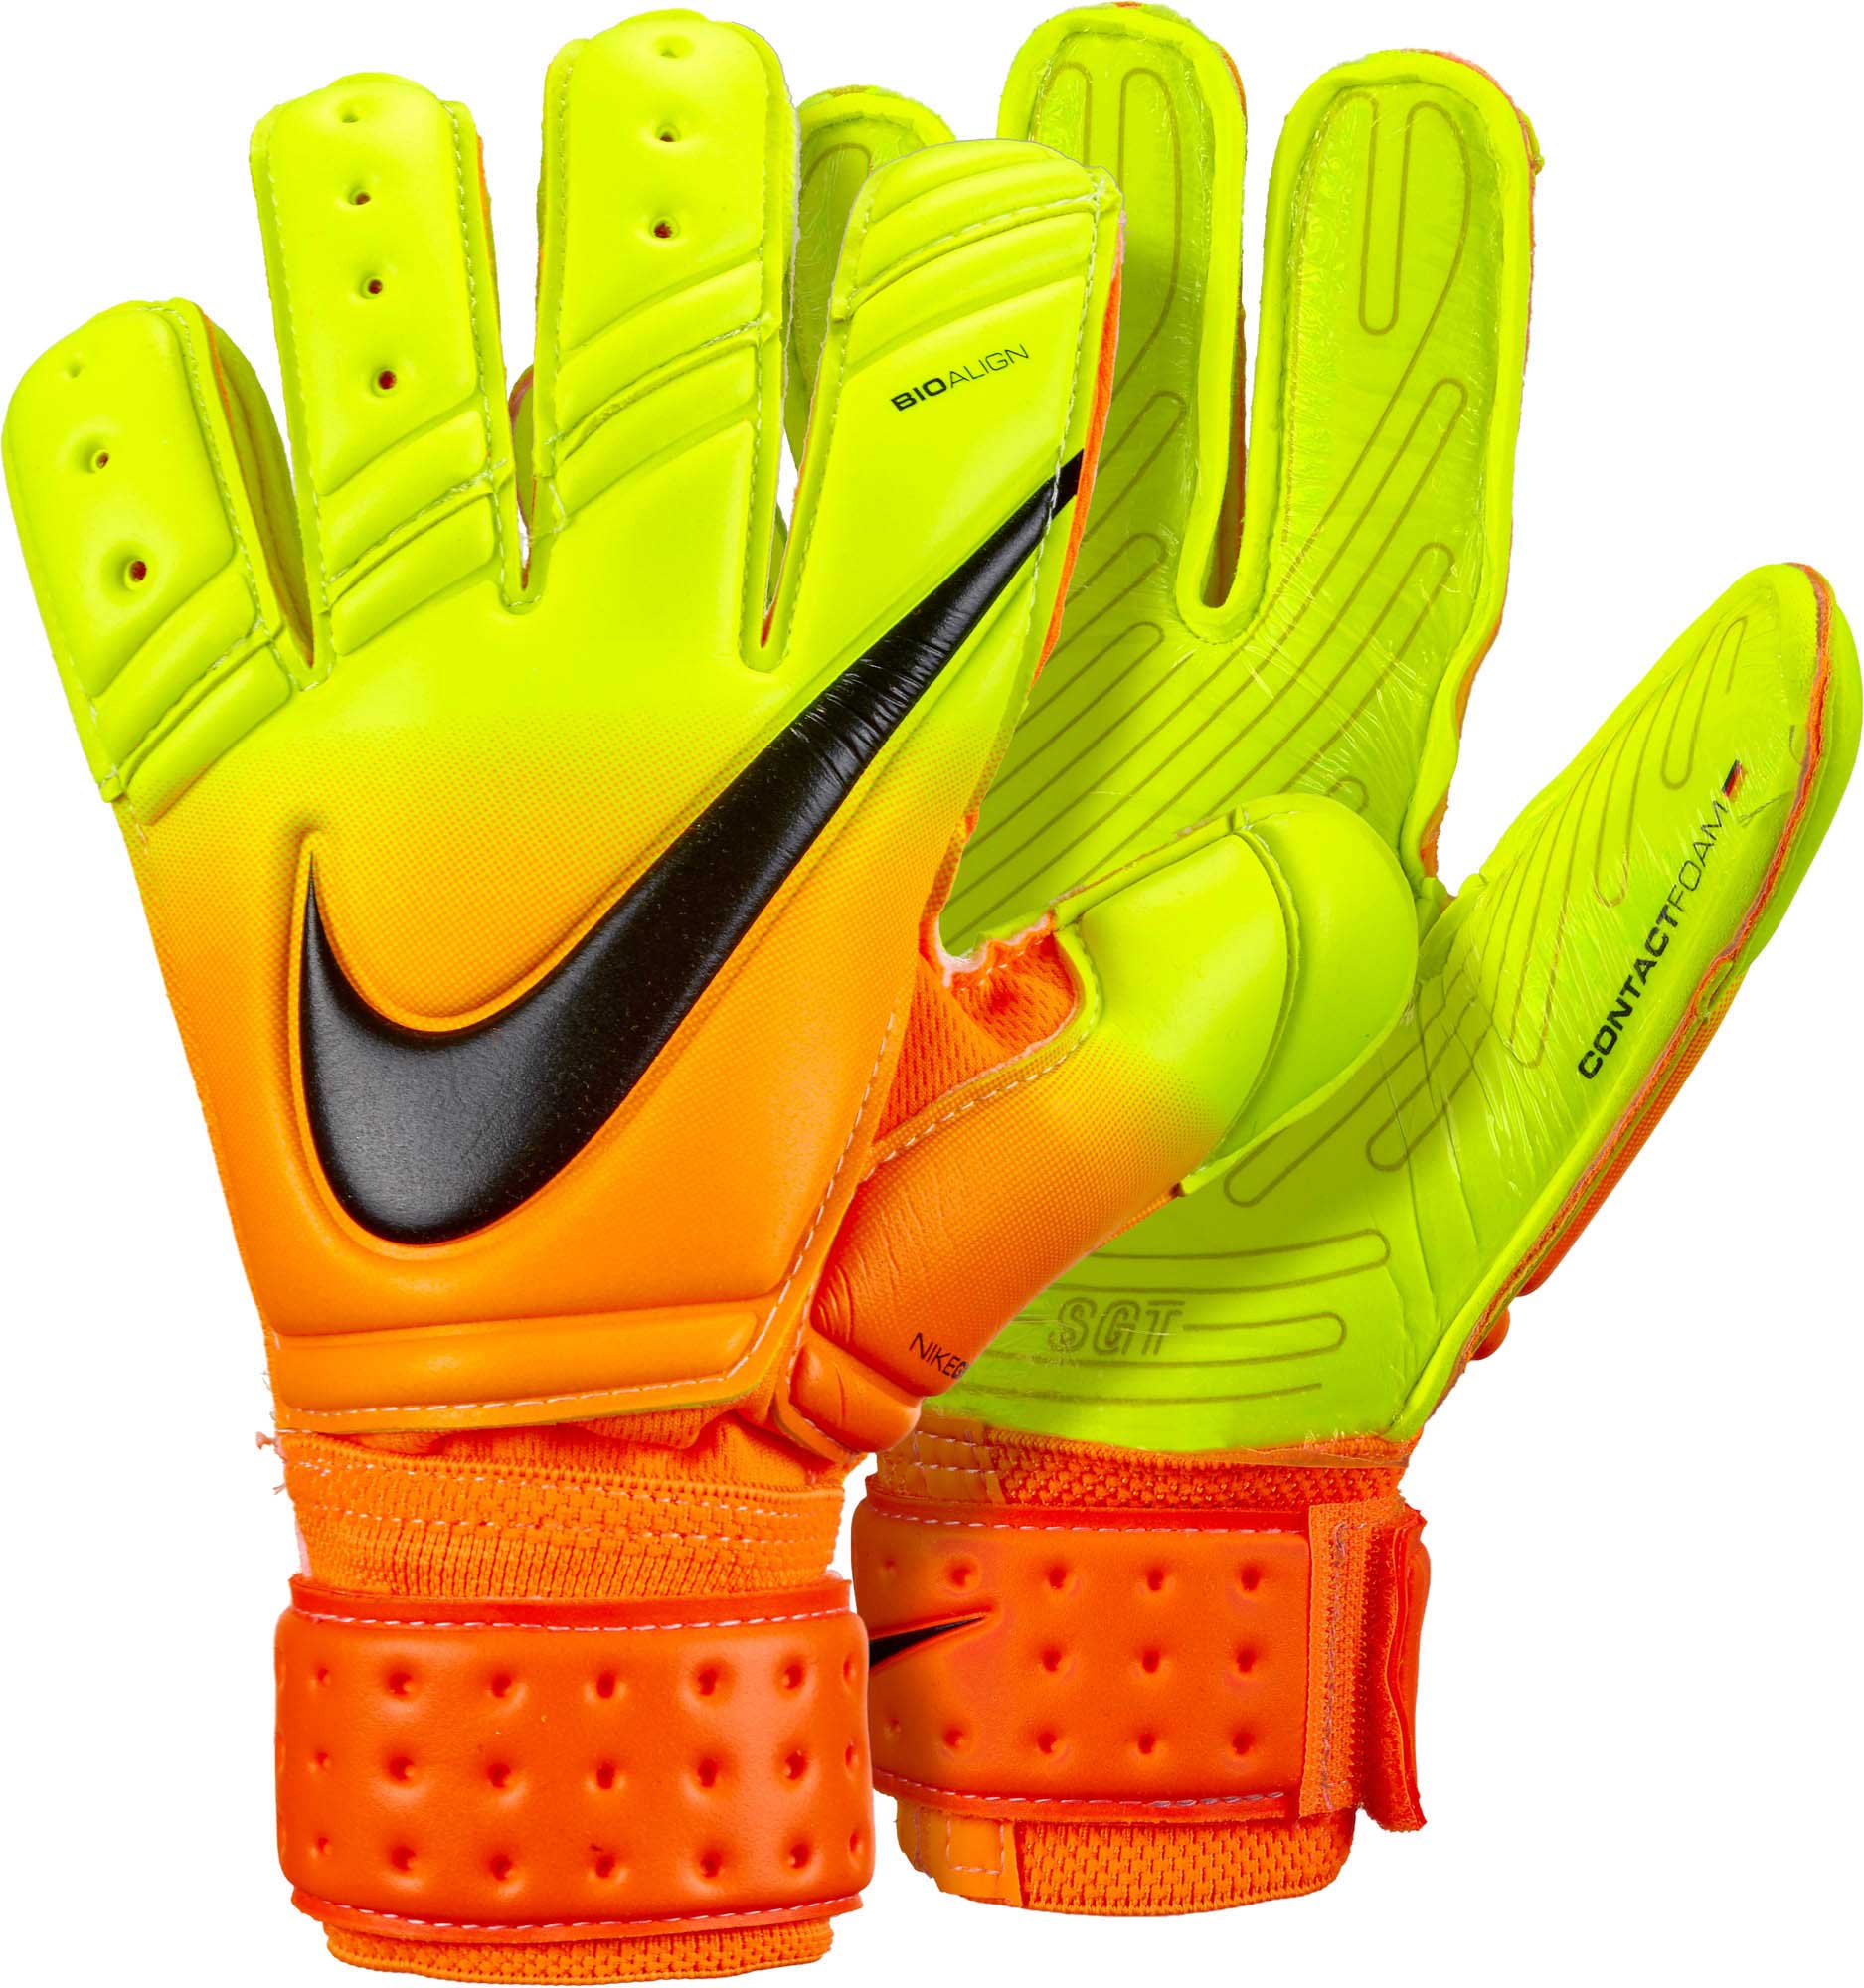 Premier SGT Goalie Gloves Orange GK Gloves